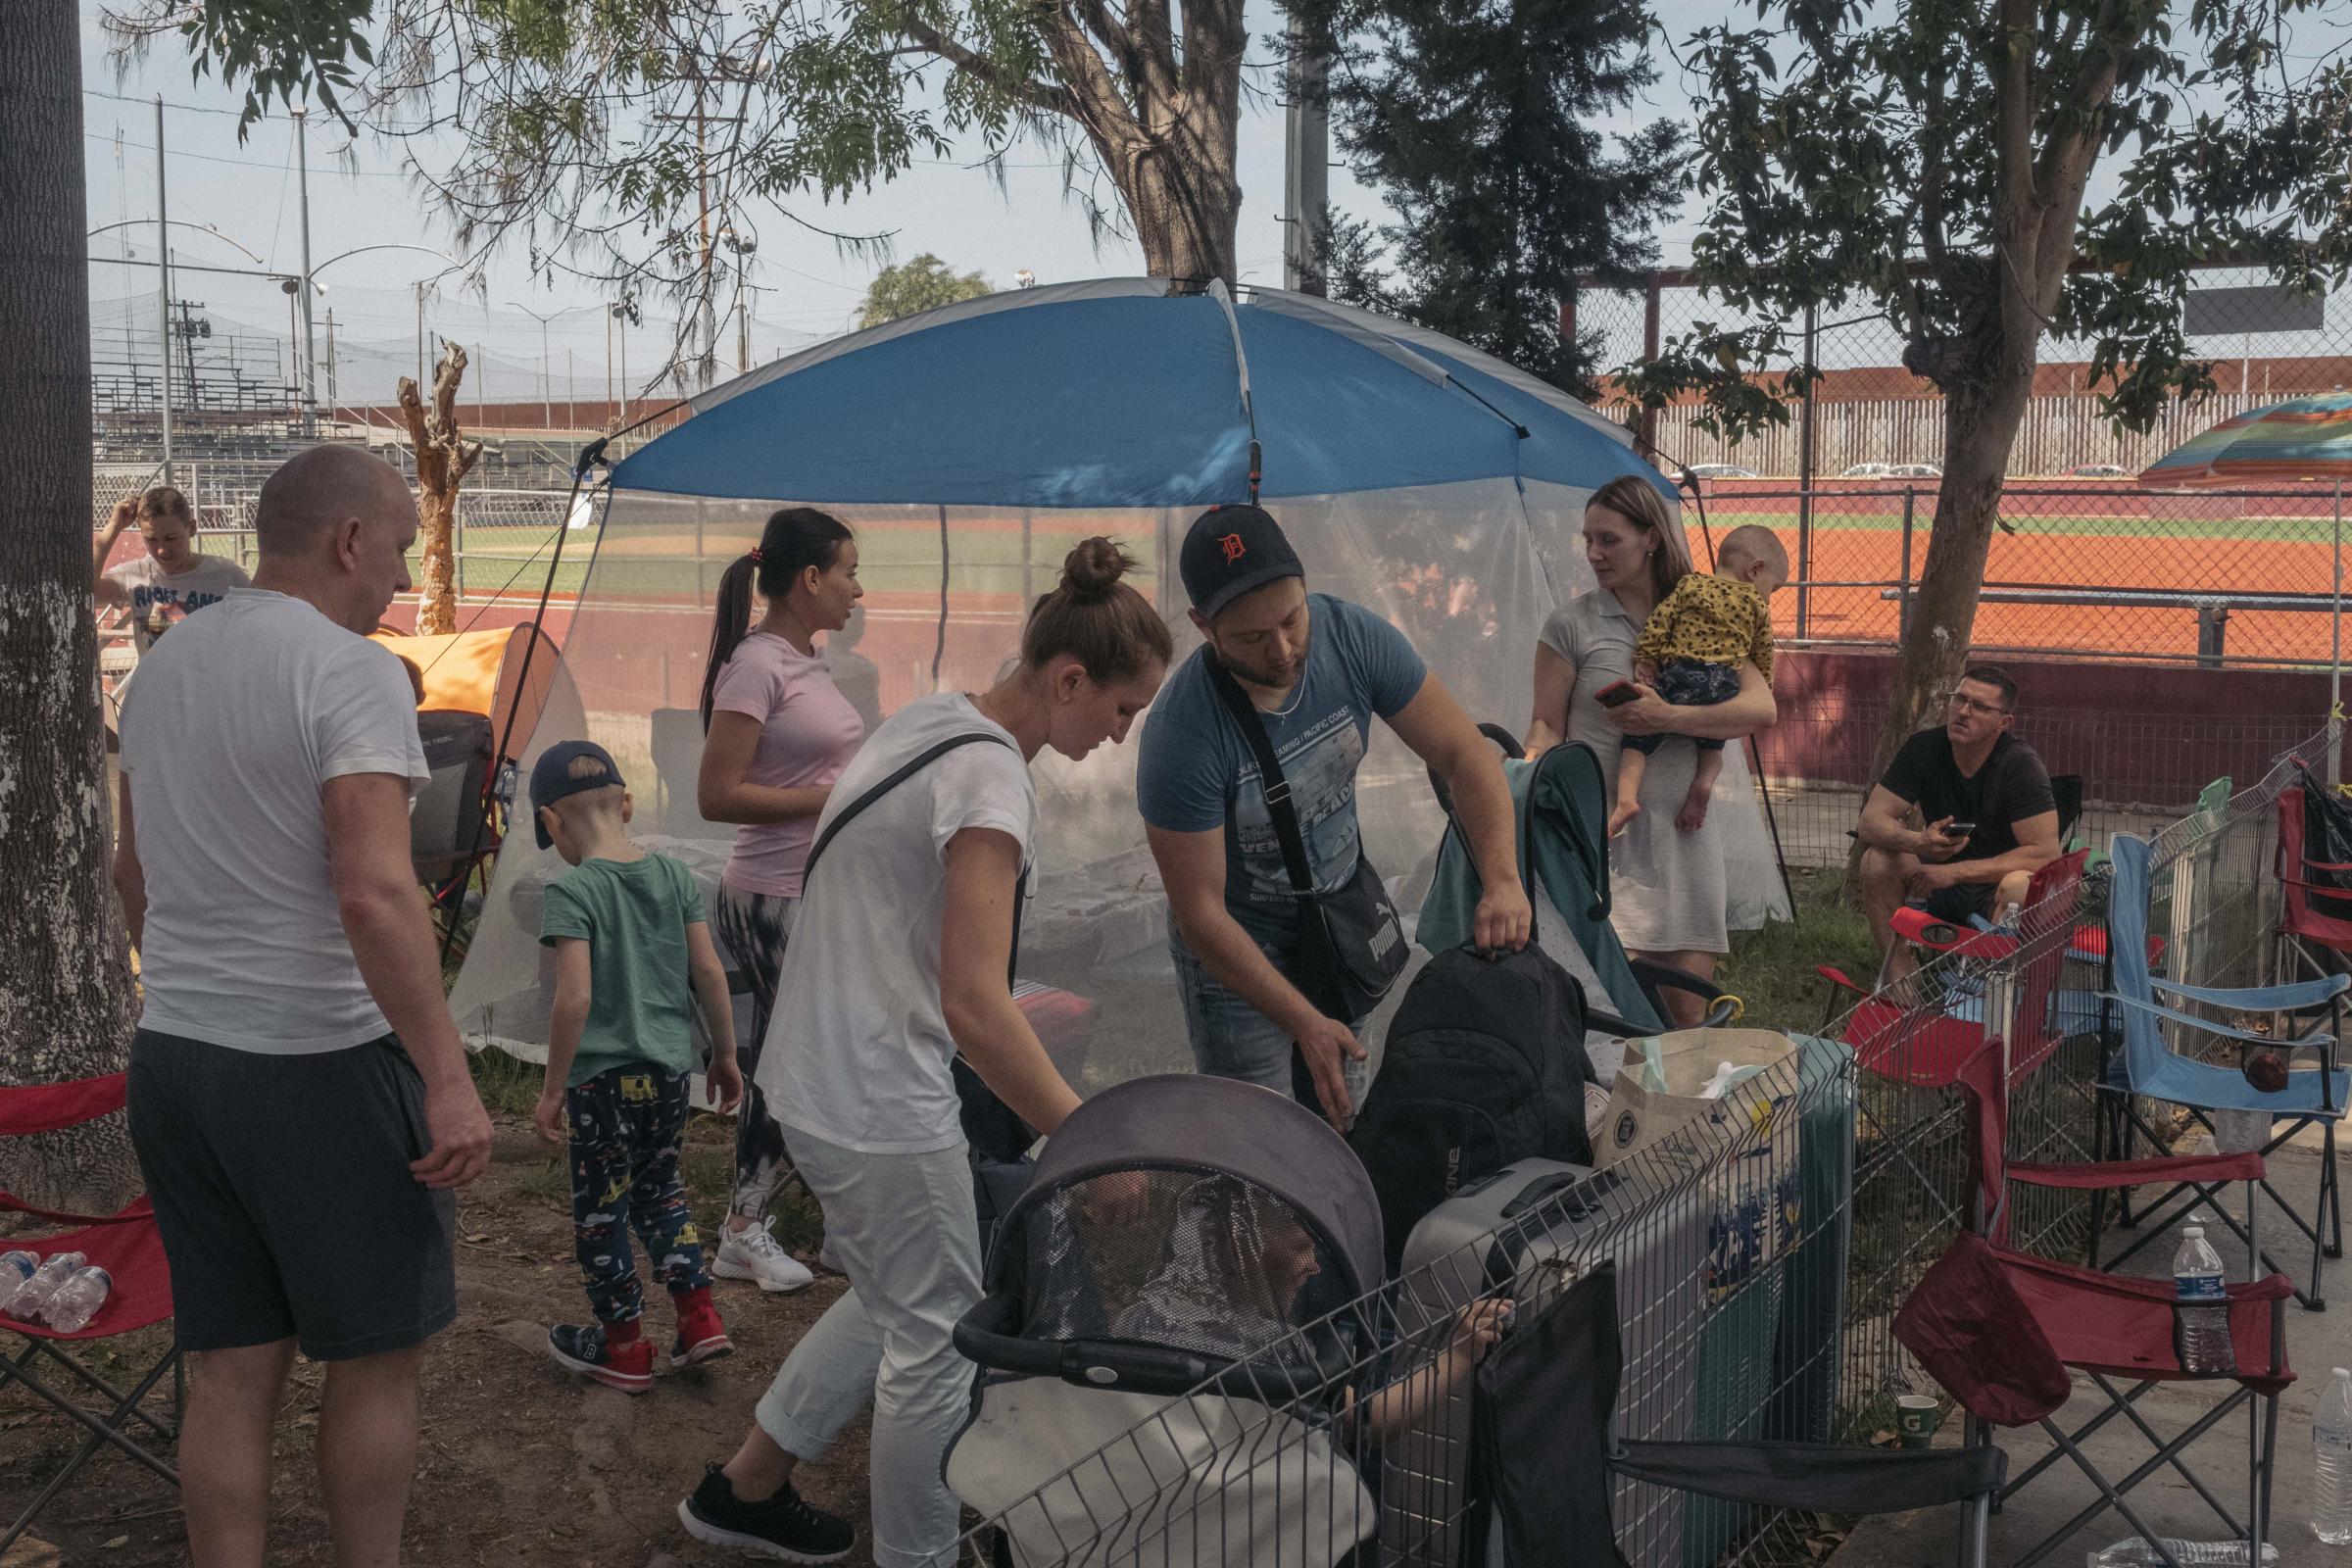 Le Monde - Ukrainian Refugees in Tijuana - Des réfugiés Ukrainiens installés dans la cour du gymnase...